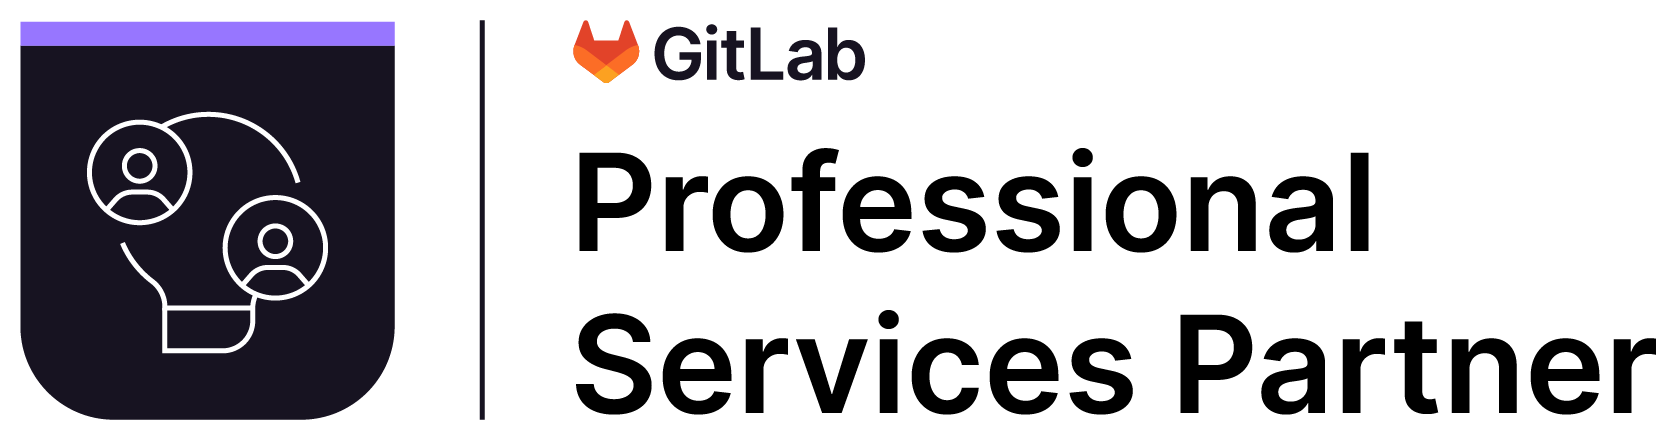 GitLab Professional Services Partner Badge